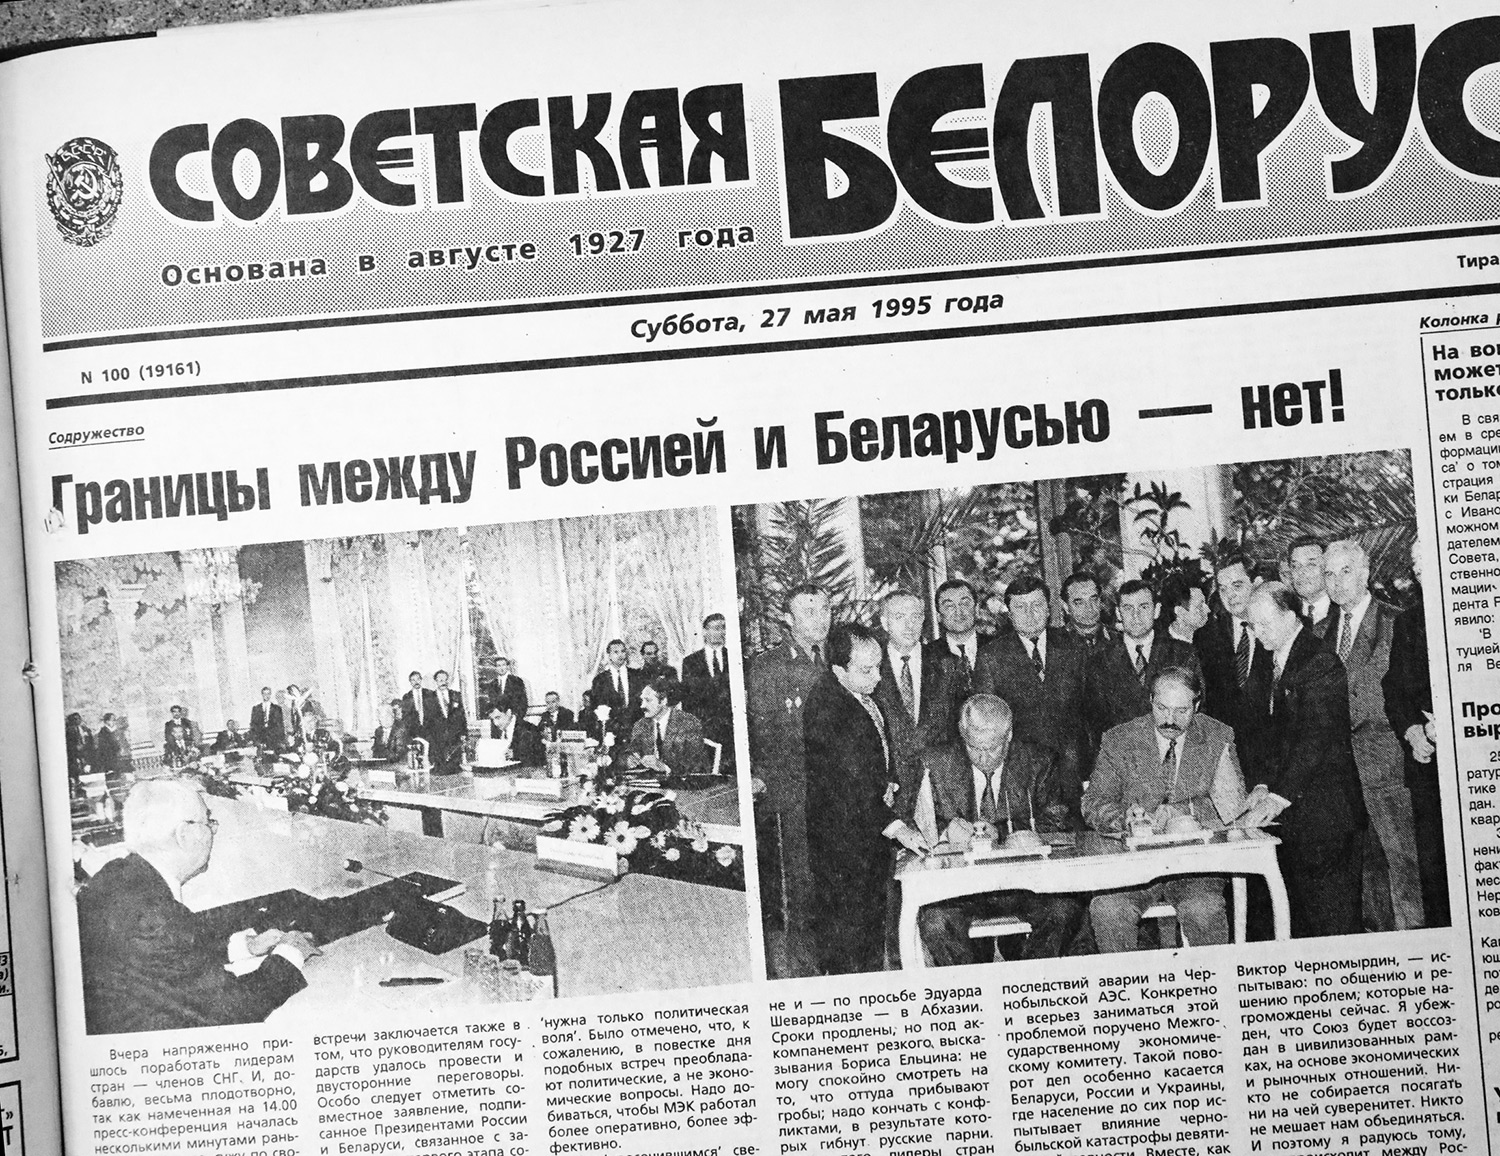 Договор о дружбе, добрососедстве и сотрудничестве Беларуси и России